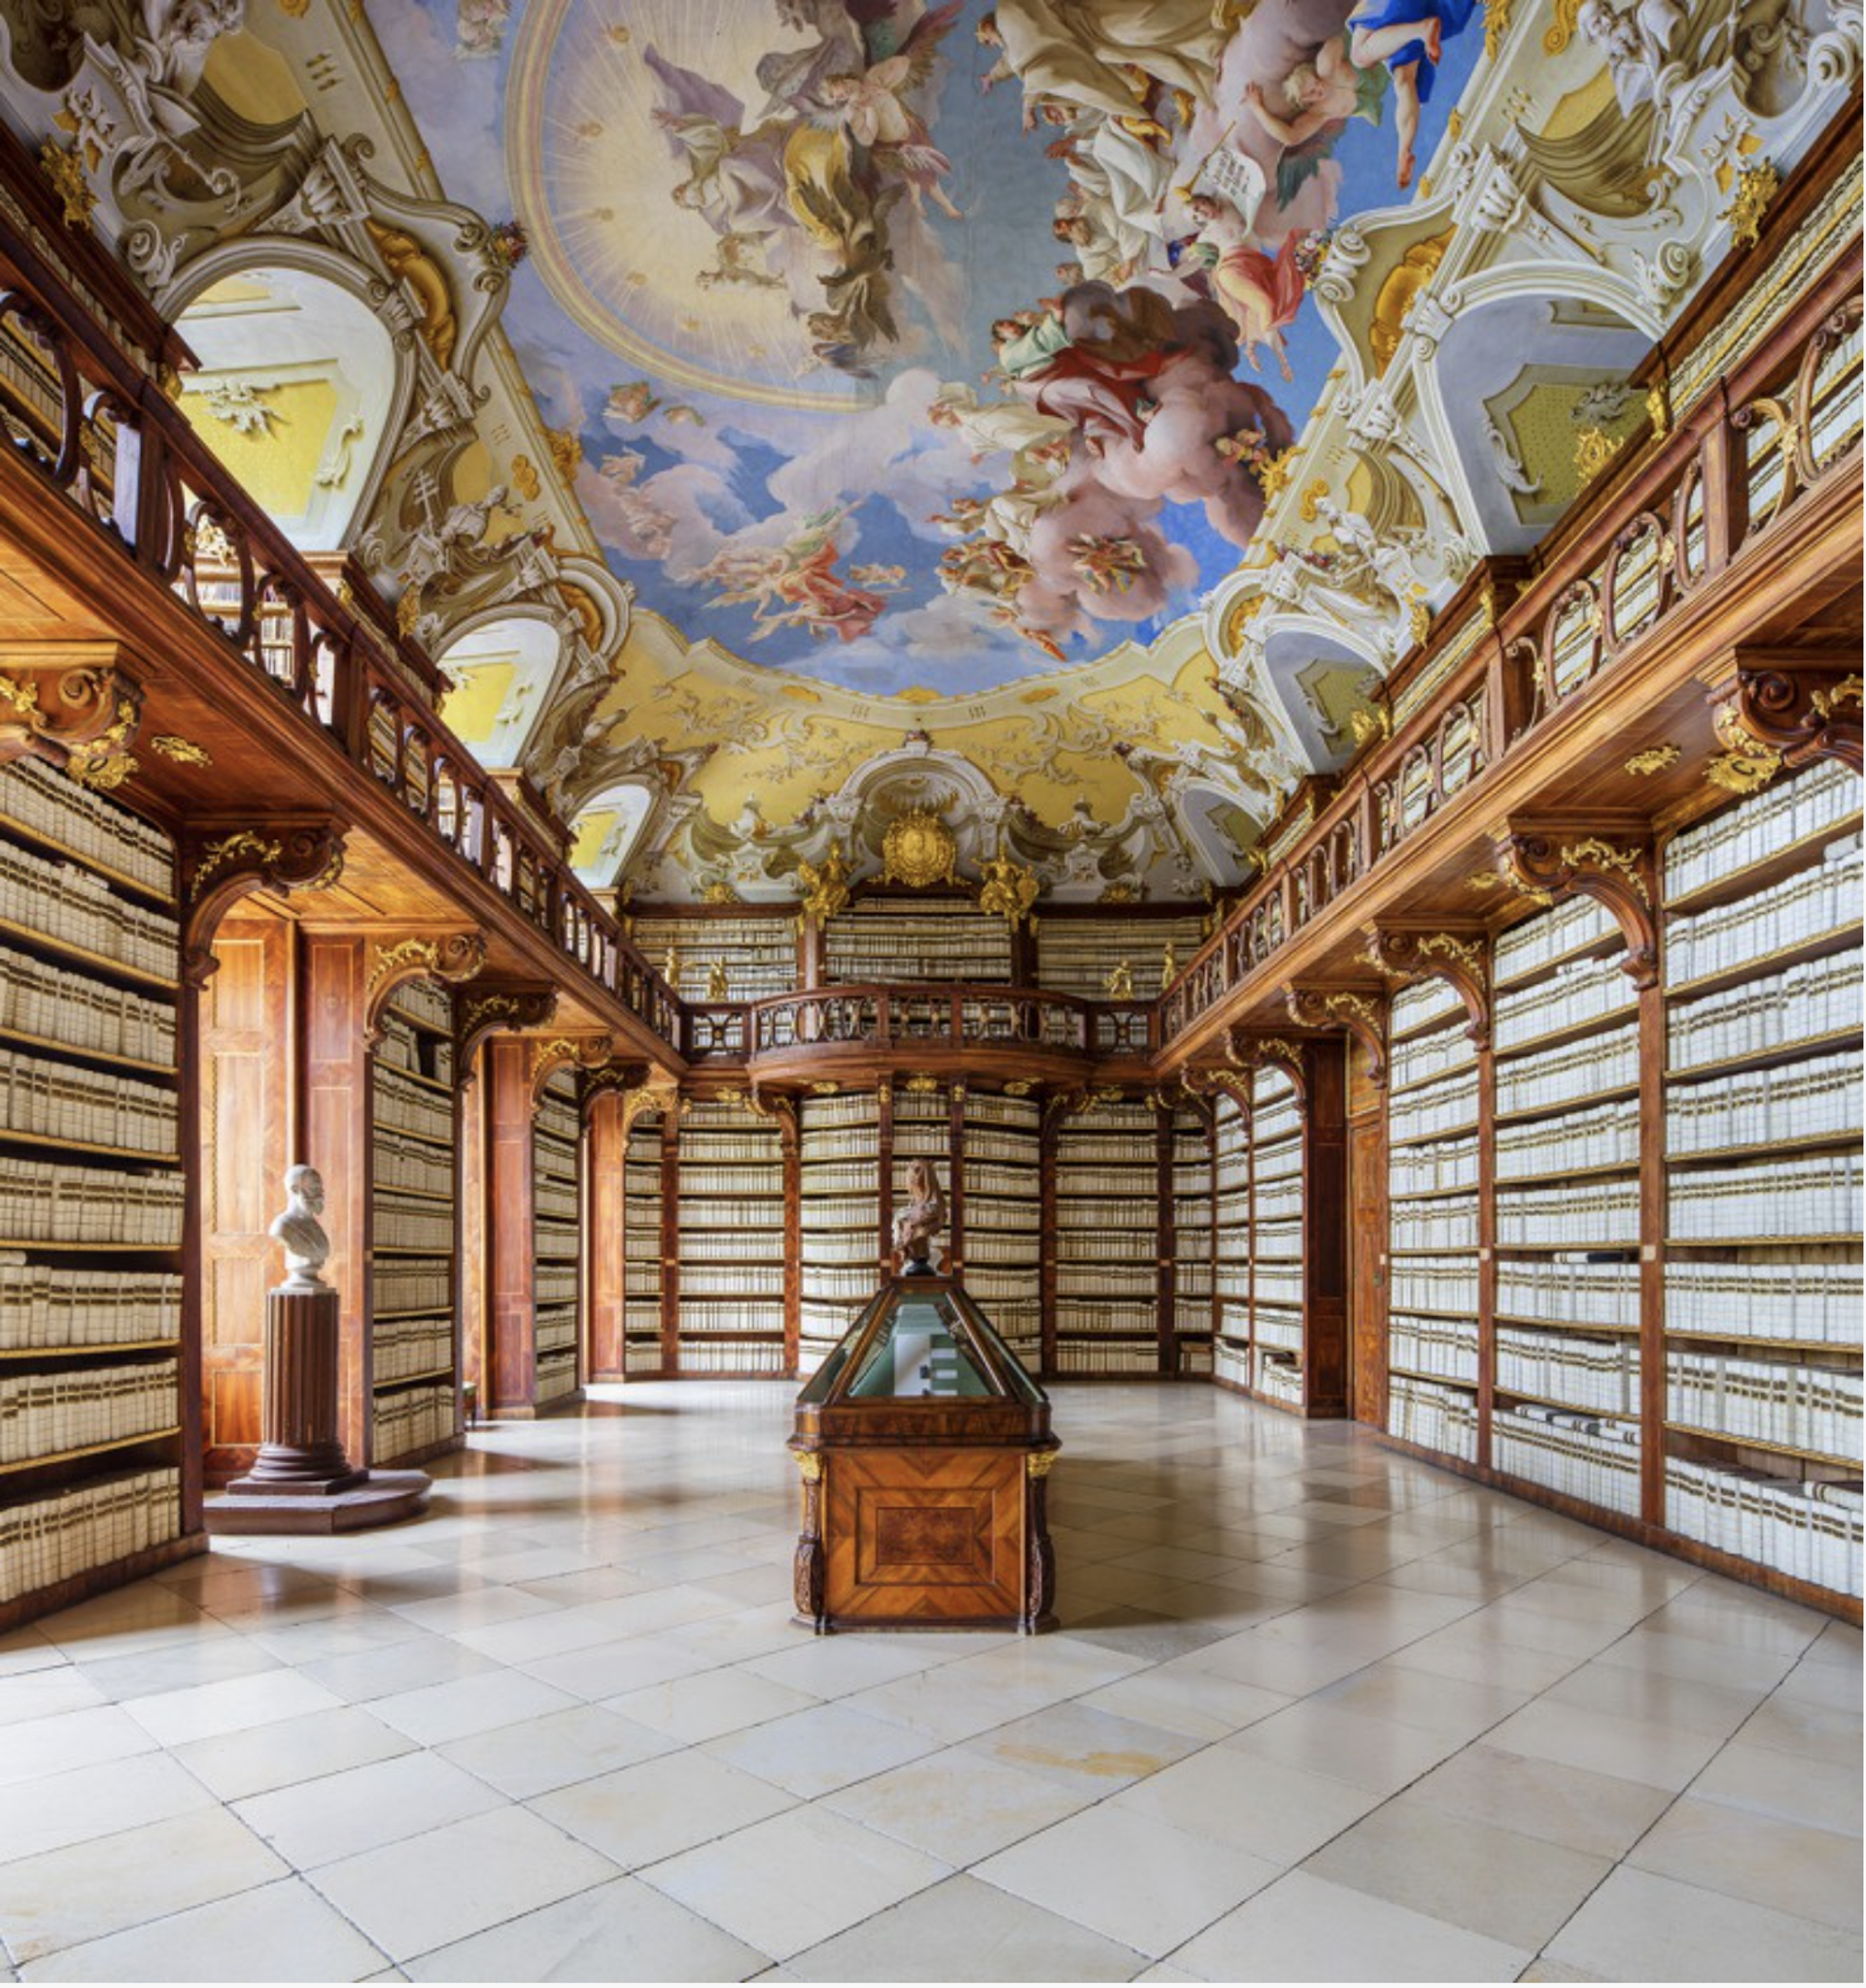 Seitenstetten Abbey Library, Austria by Reinhard Gorner